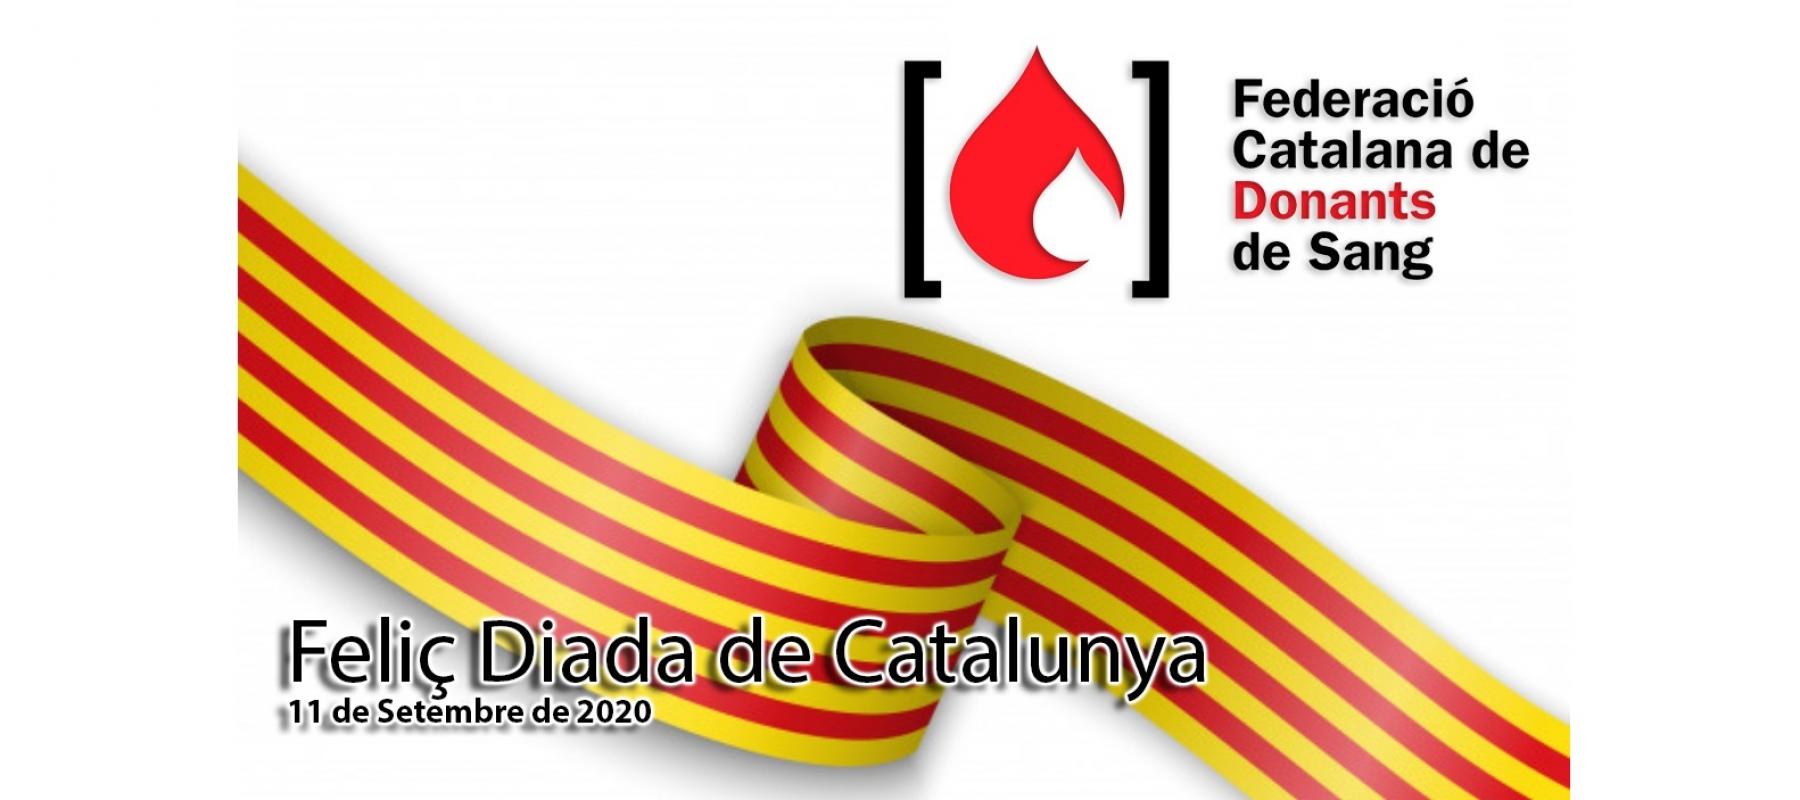 Feliç Diada de Catalunya